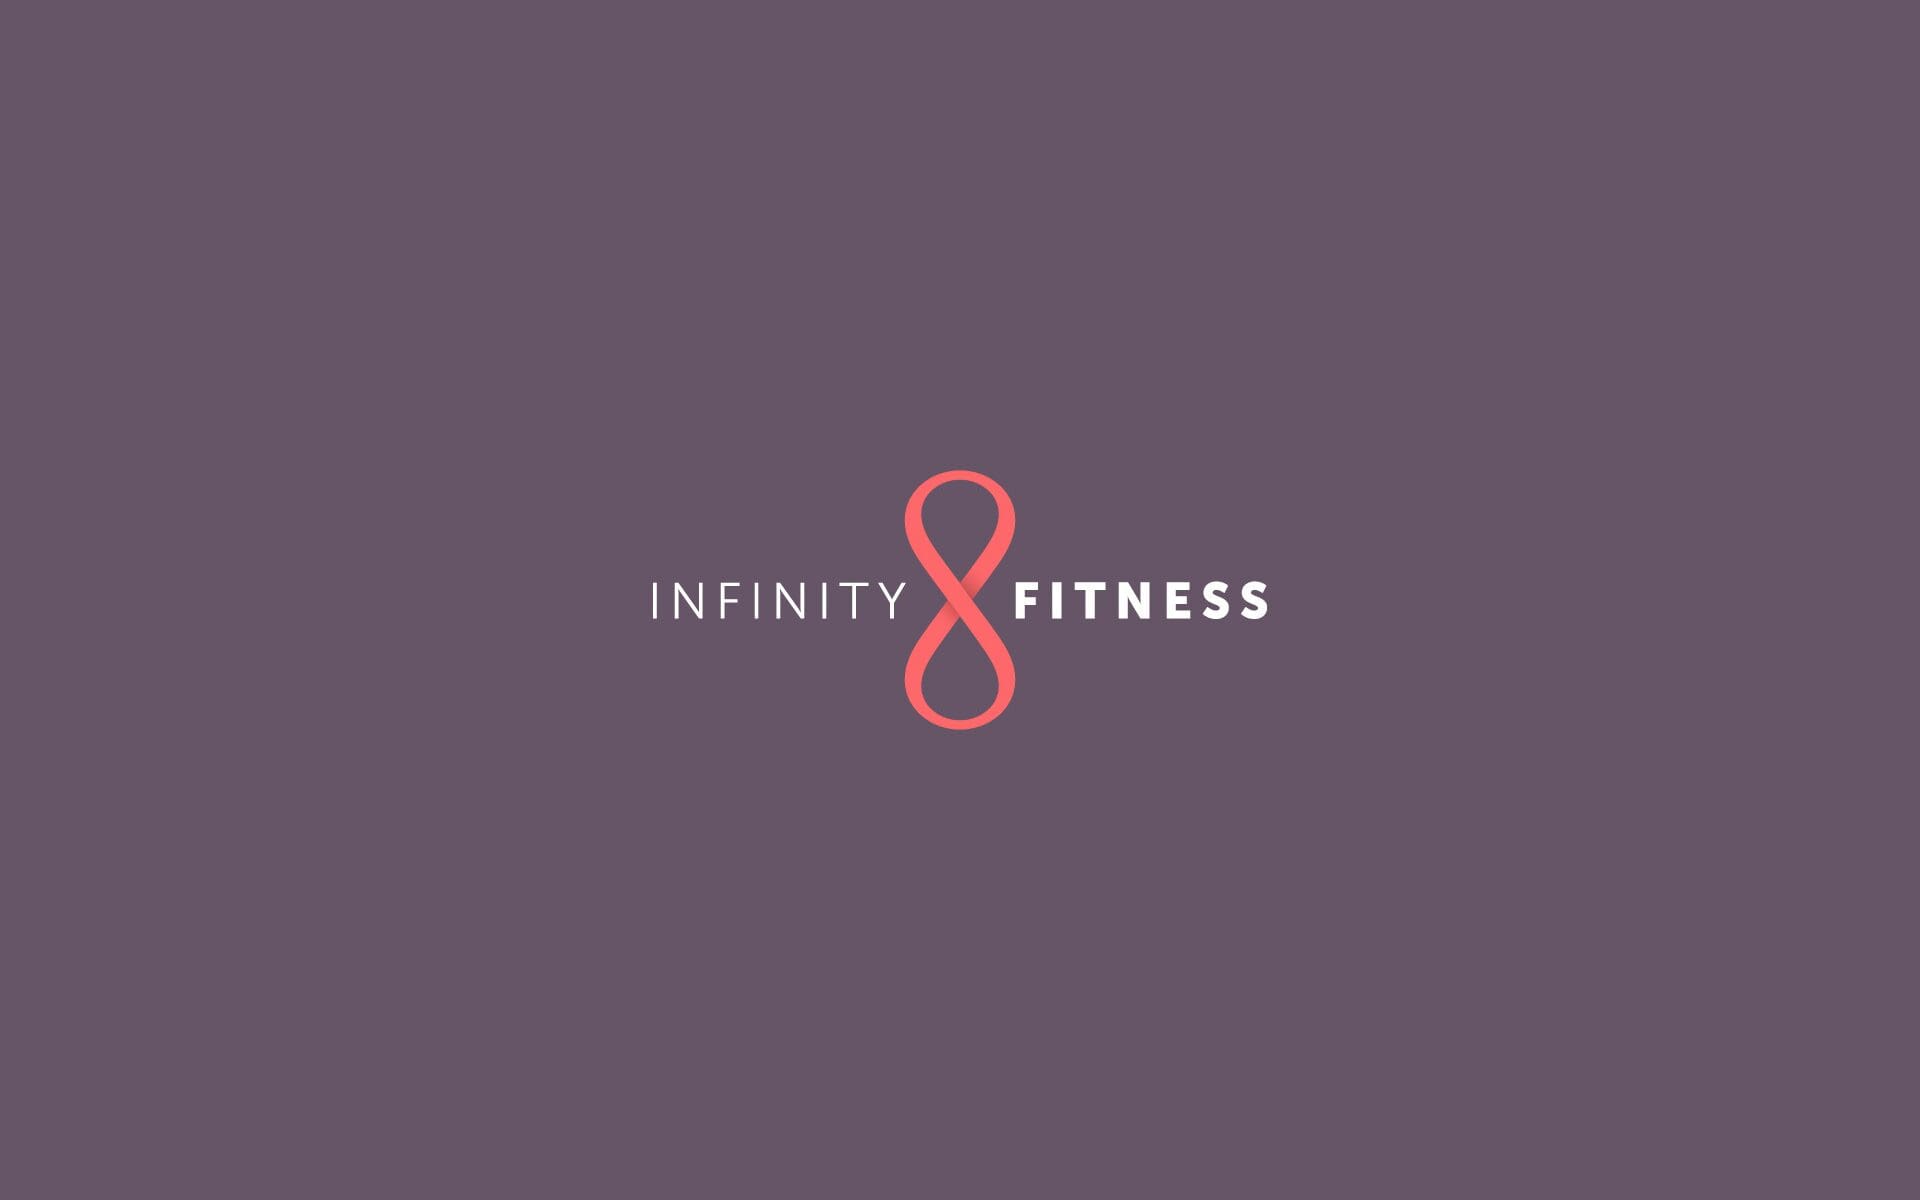 Infinity 8 Fitness